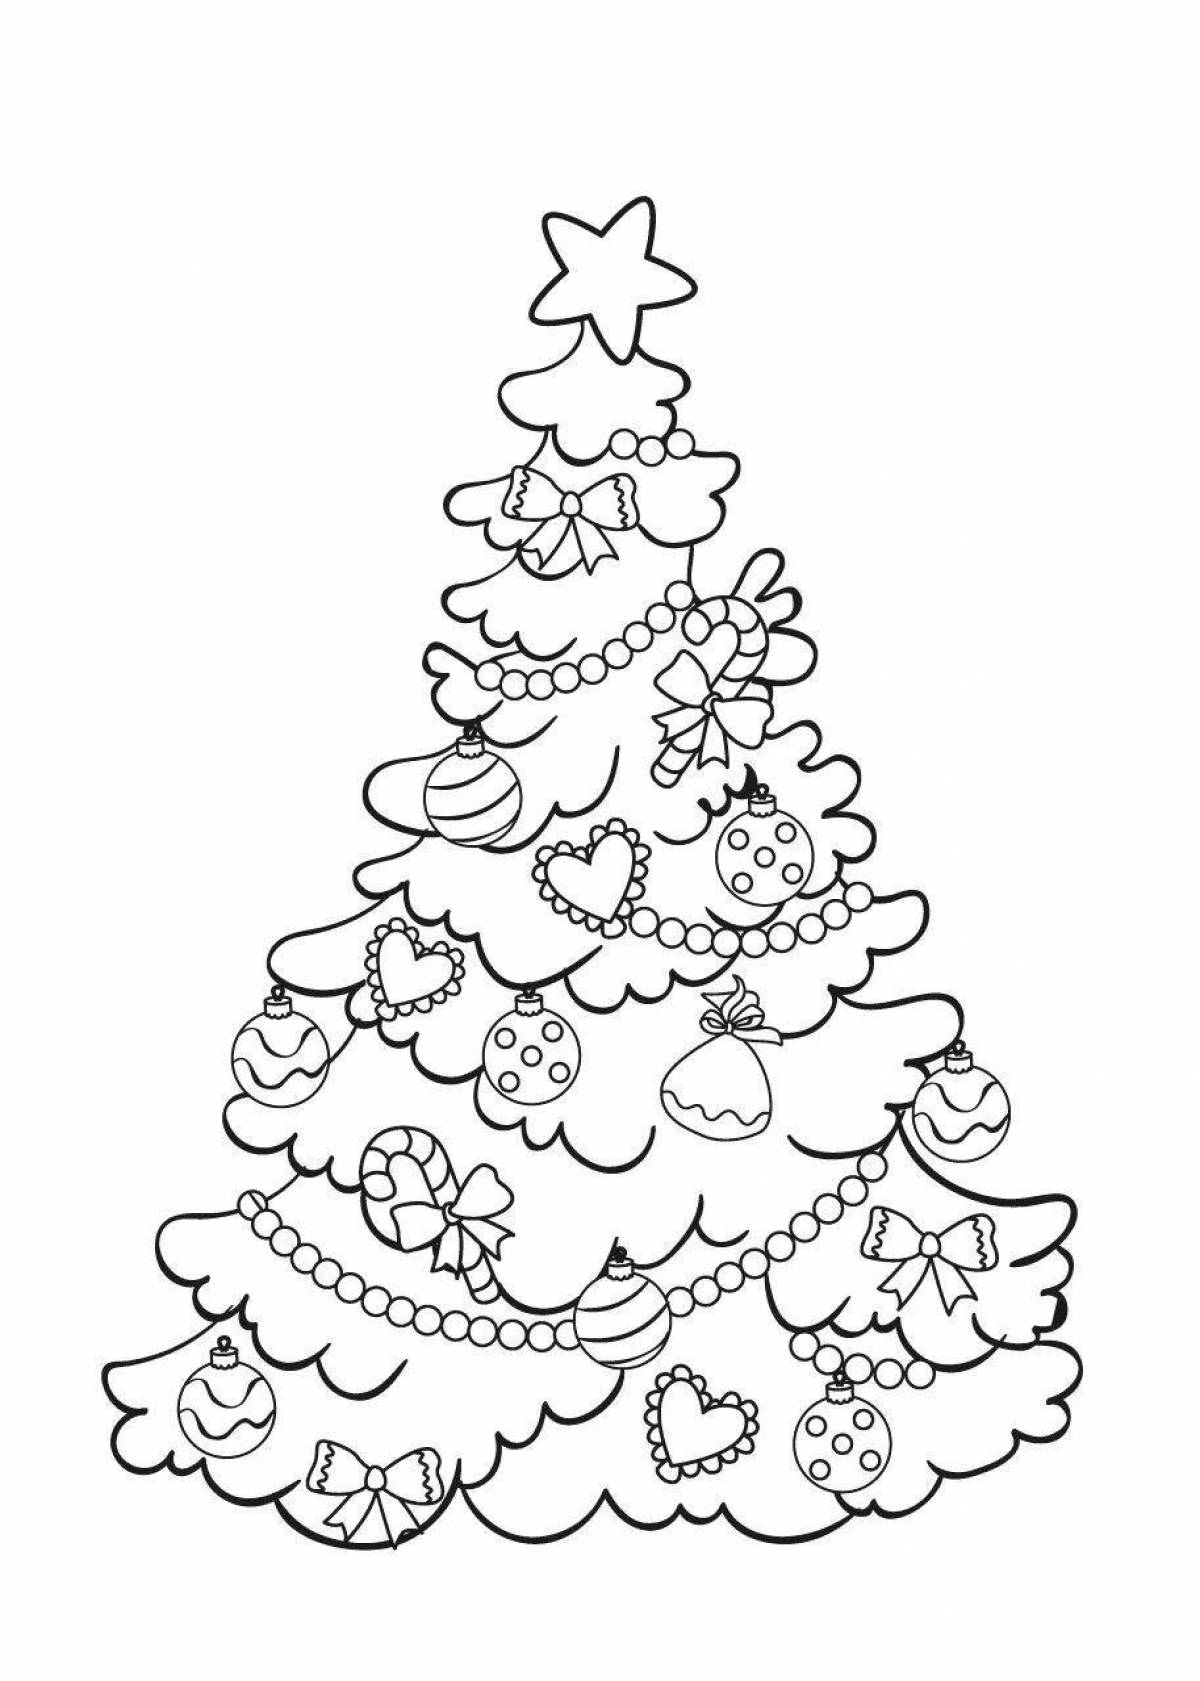 Раскраска «сверкающая новогодняя елка» для детей 6-7 лет